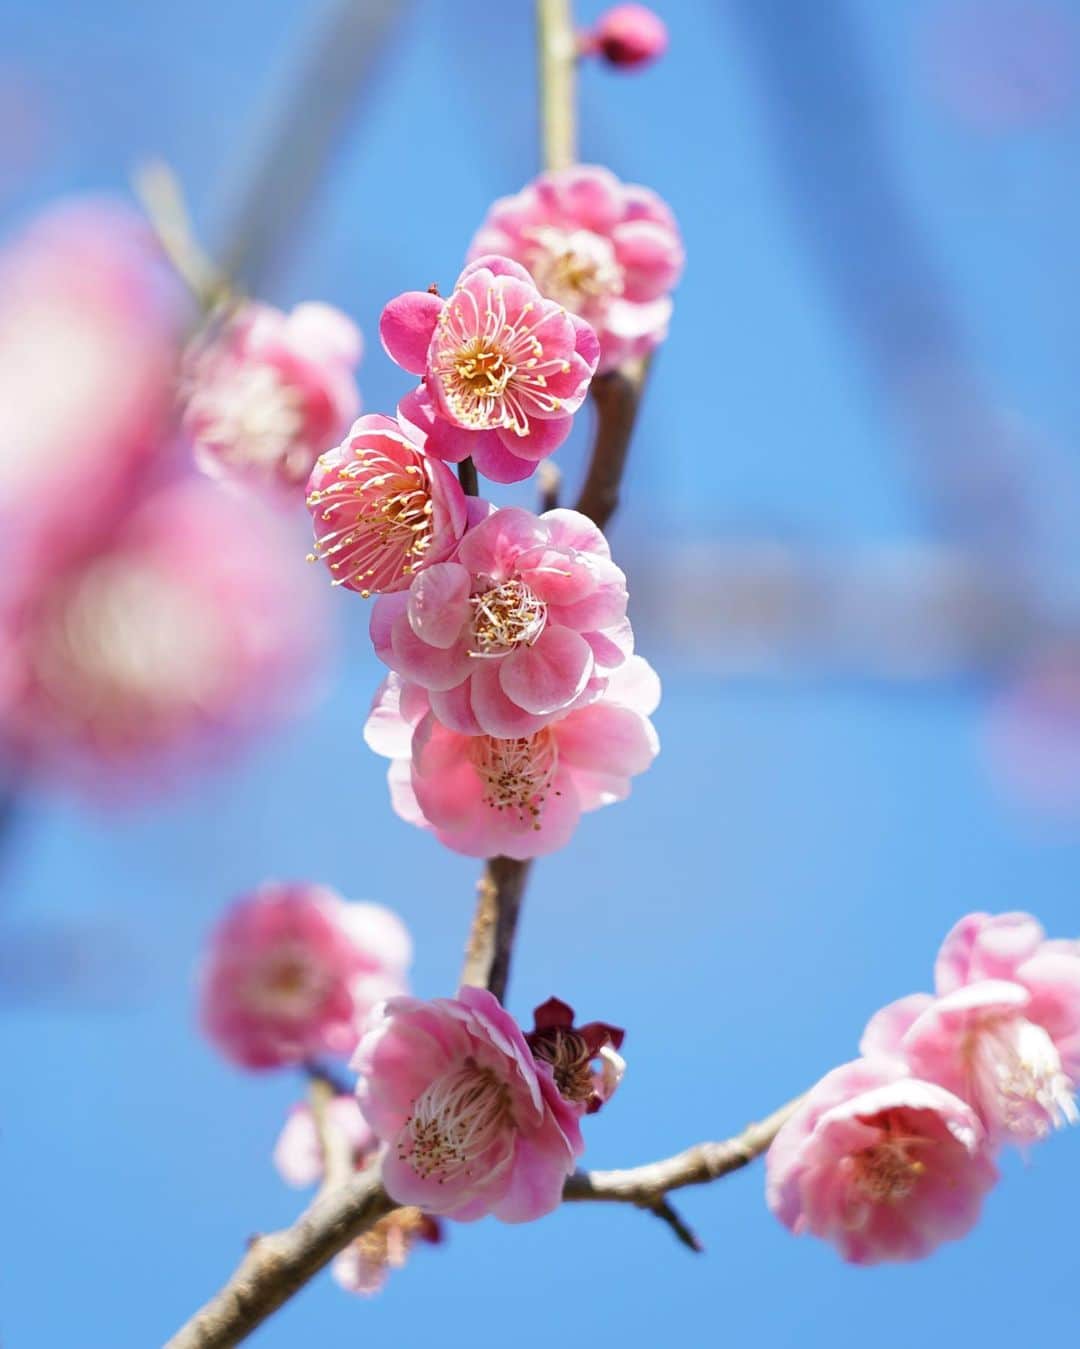 よみうりランドのインスタグラム：「【梅】 今園内の梅の花が見頃です。春はもうそこまで！ 【plum blossoms】 The plum blossoms in the garden are at their best. Spring is almost here!  #よみうりランド #遊園地 #梅 #花  #ファミリー #家族  #週末 #東京 #小旅行 #女子旅 #観光 #観光スポット #観光地 #インスタ映えスポット #よみラン映え #よみランジェニック #Yomiuriland  #Tokyo #Japan #amusementpark #instagood #trip」